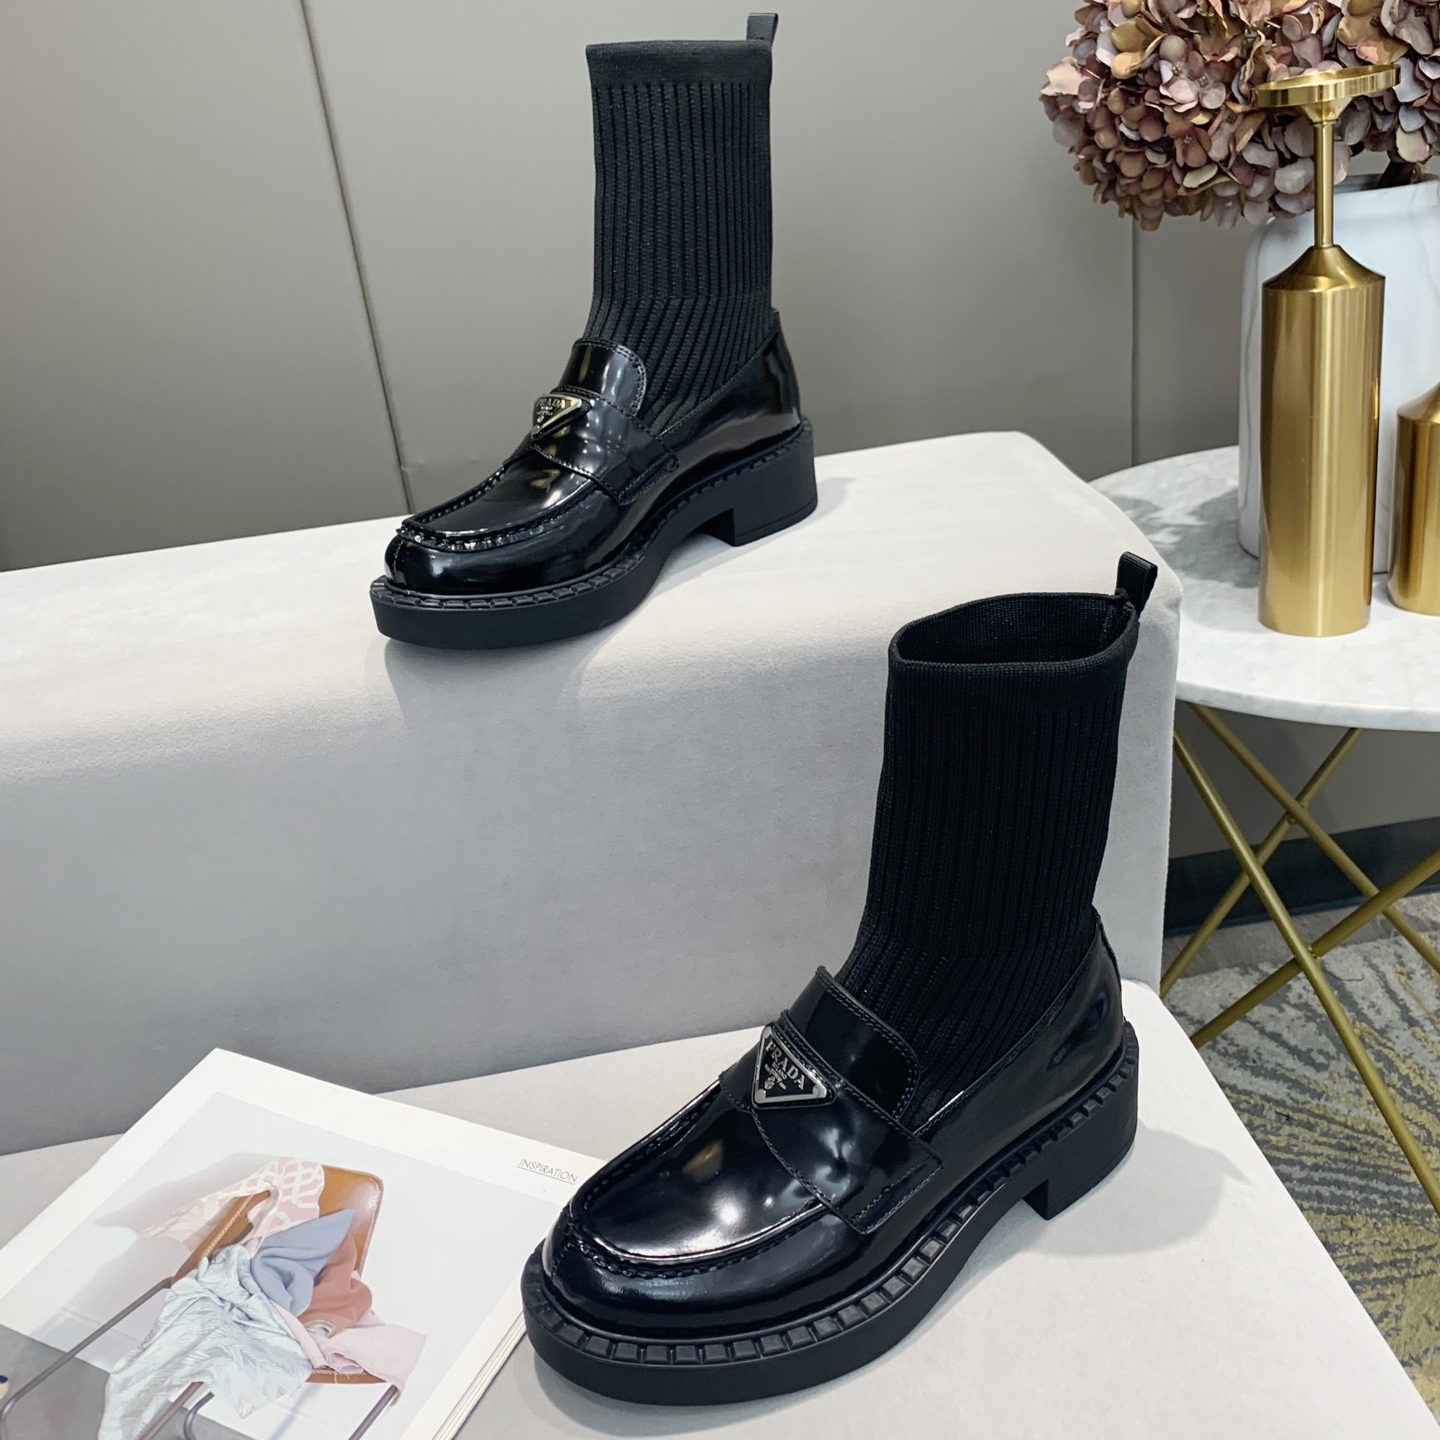 Dobro prodajane nogavice, škornji CalvinLuo, modni luksuzni čevlji znane blagovne znamke Milan Fashion Week, ženski čevlji in ponarejeni dizajnerski čevlji, tudi visokokakovostne pete blagovne znamke